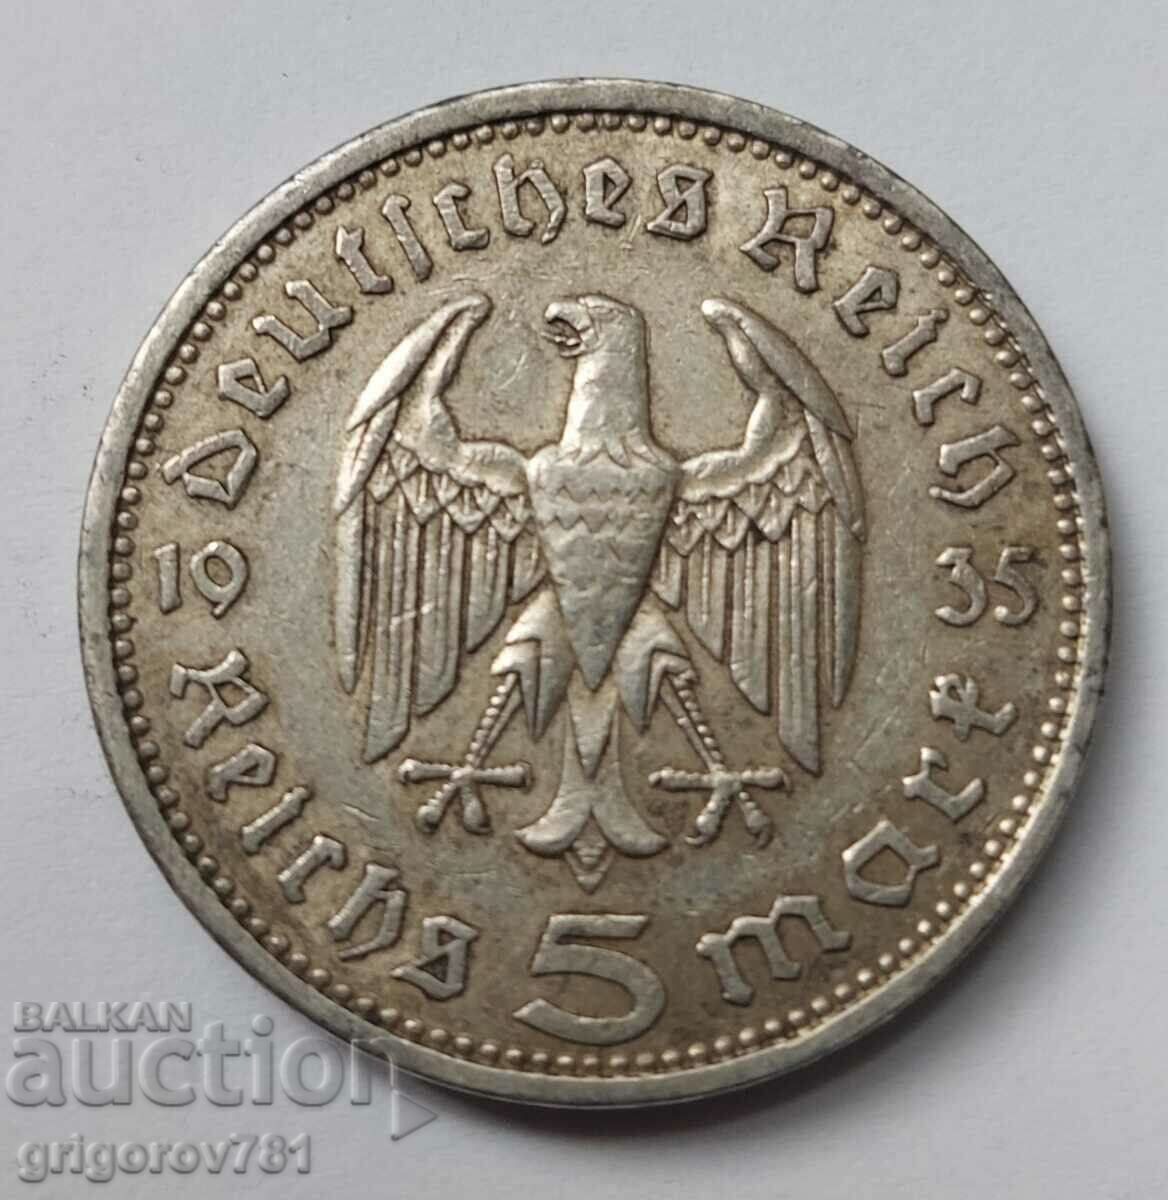 5 Mark Silver Γερμανία 1935 A III Reich Silver Coin #34